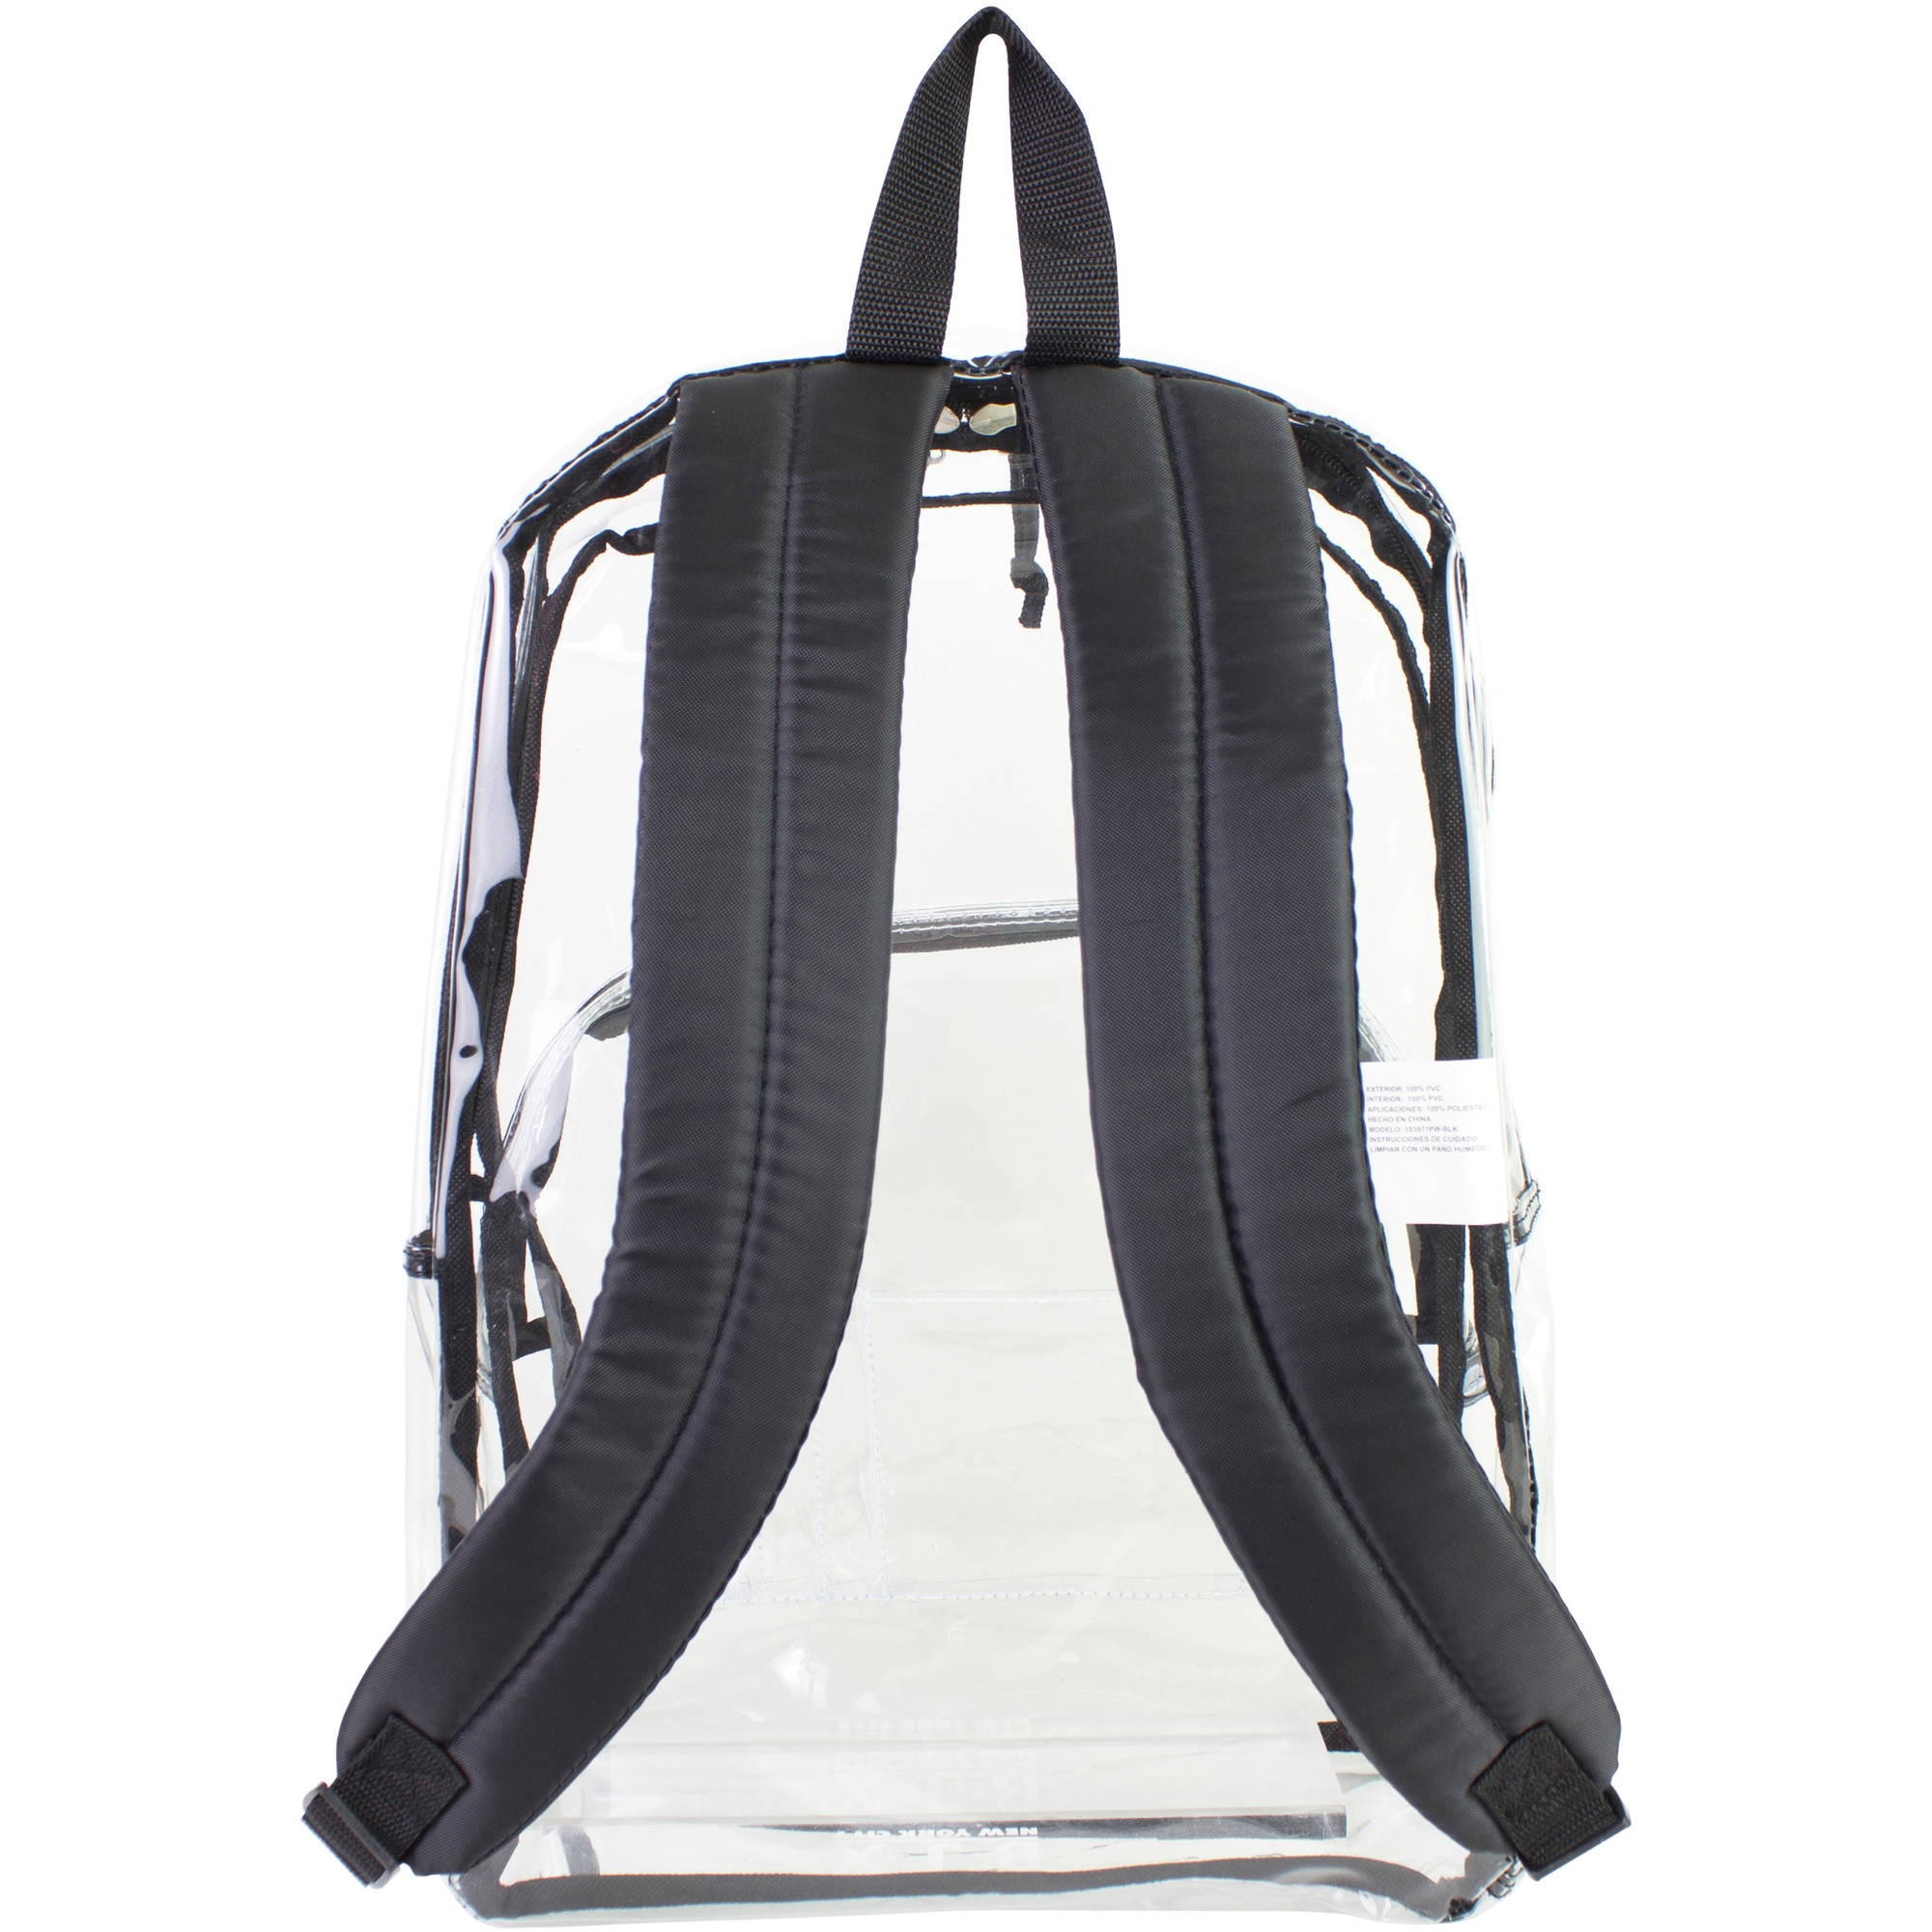 Eastsport Clear Backpack with Front Pocket and Adjustable Padded Shoulder Straps - image 4 of 4